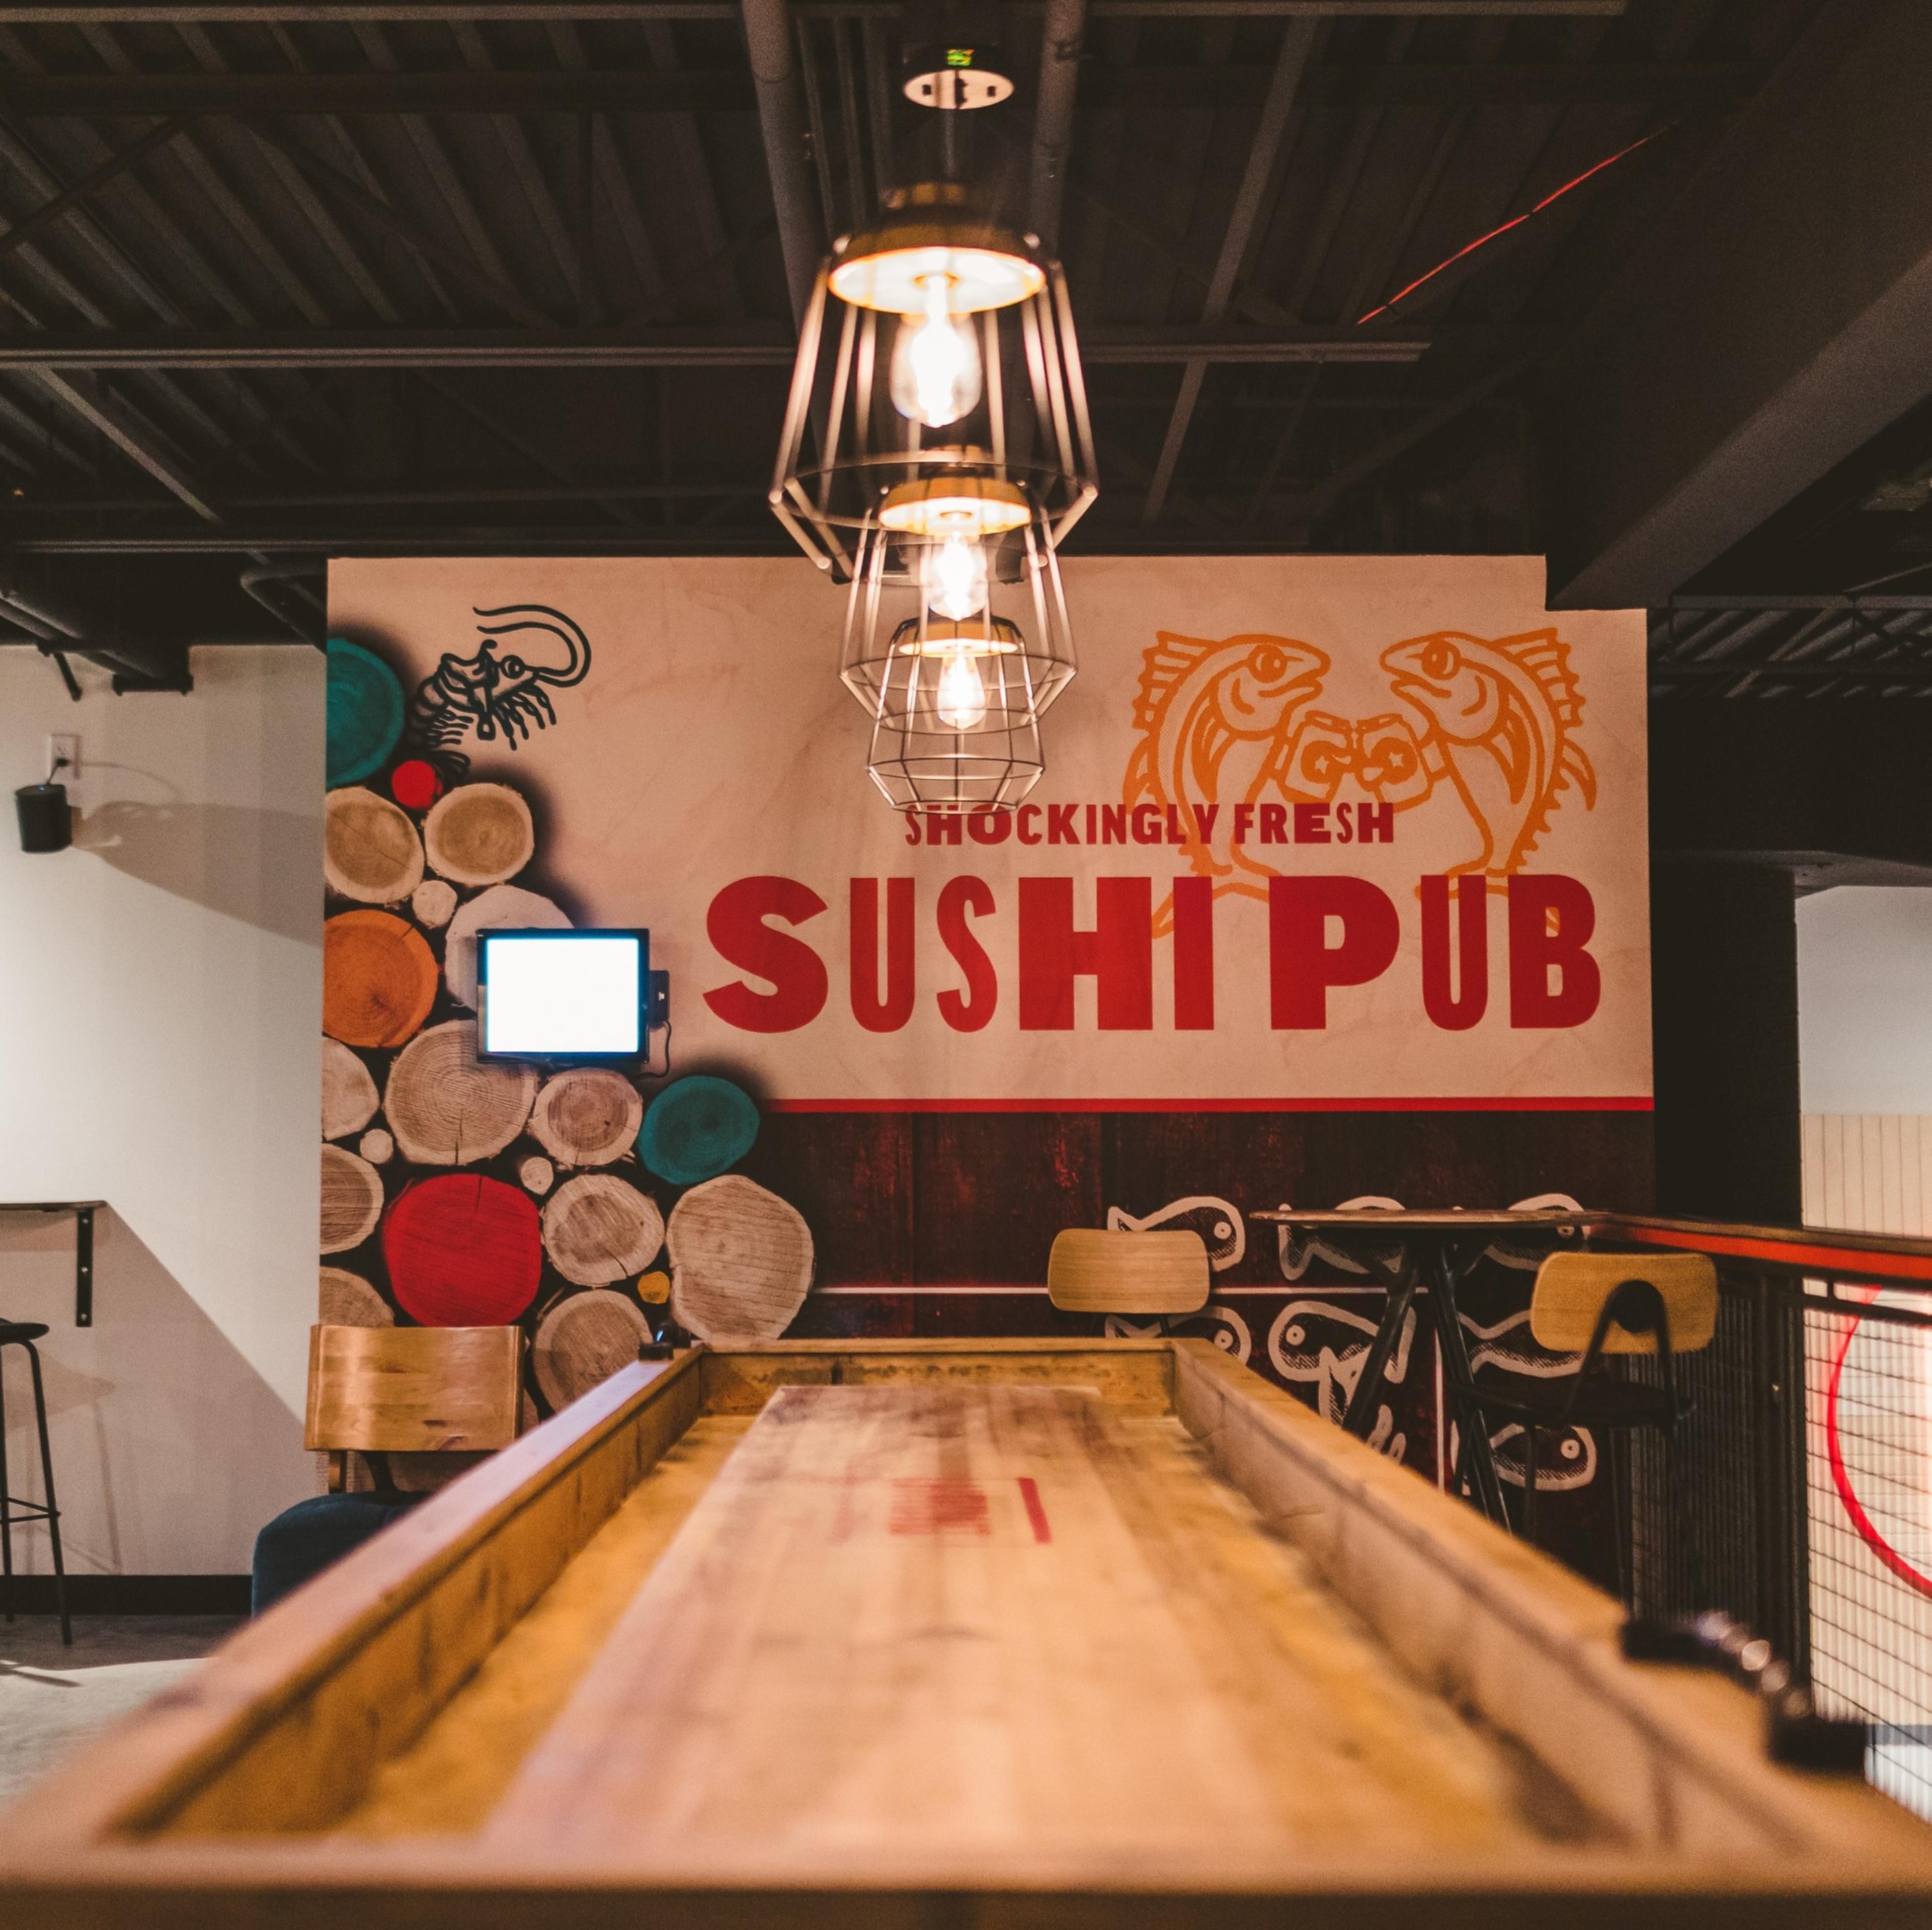 Hachi Sushi Pub